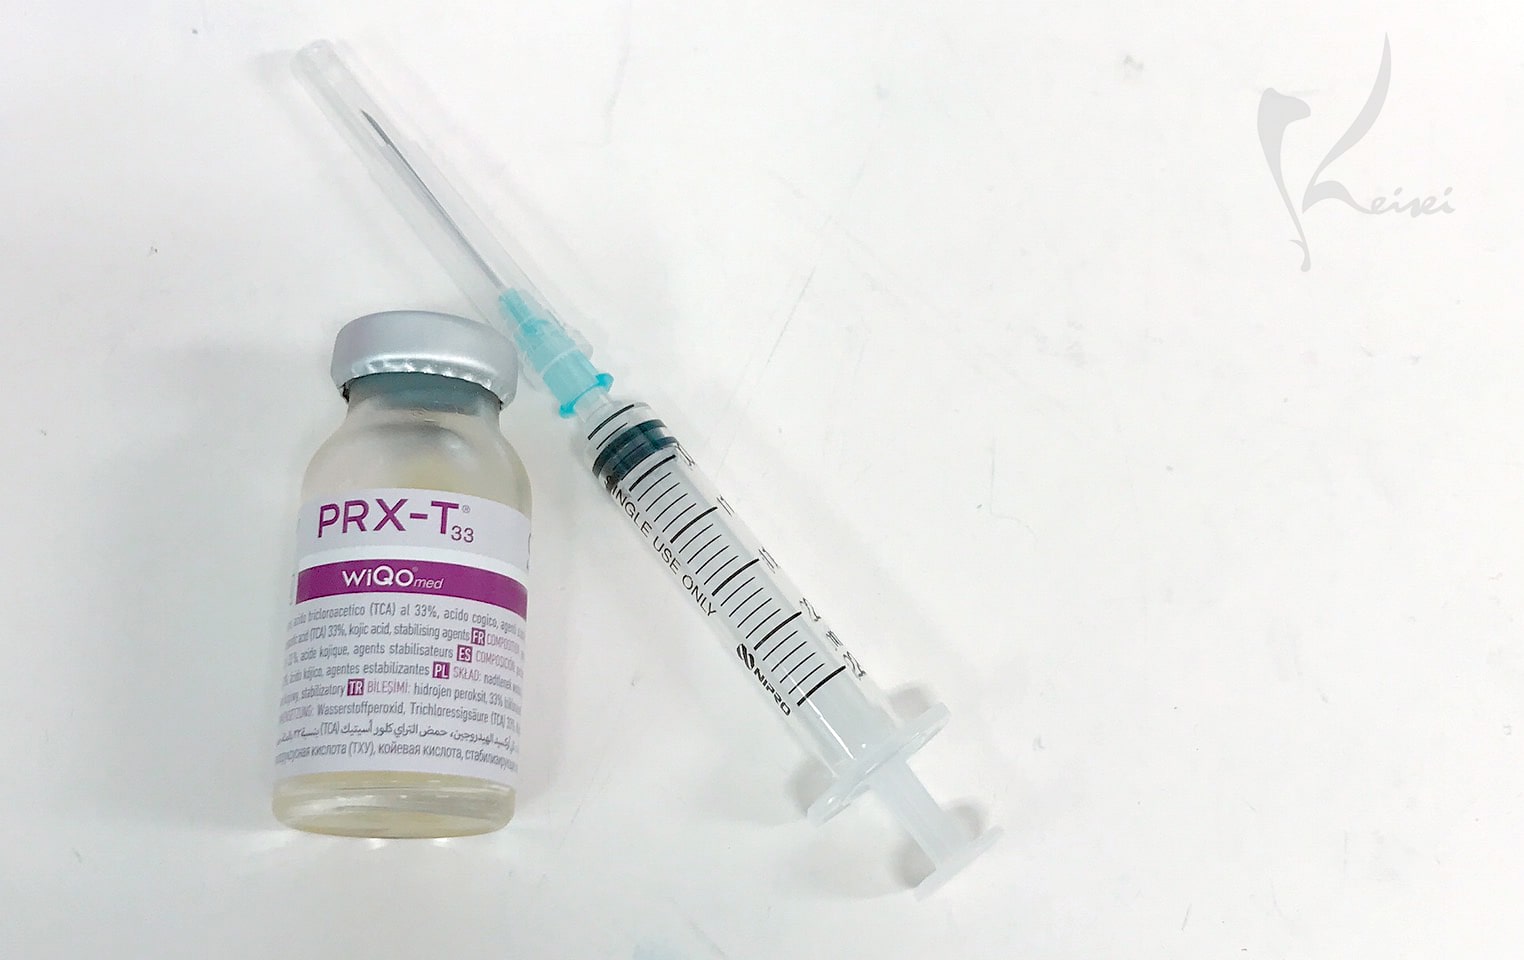 マッサージピールの薬剤「PRX-T33」と注射器の画像